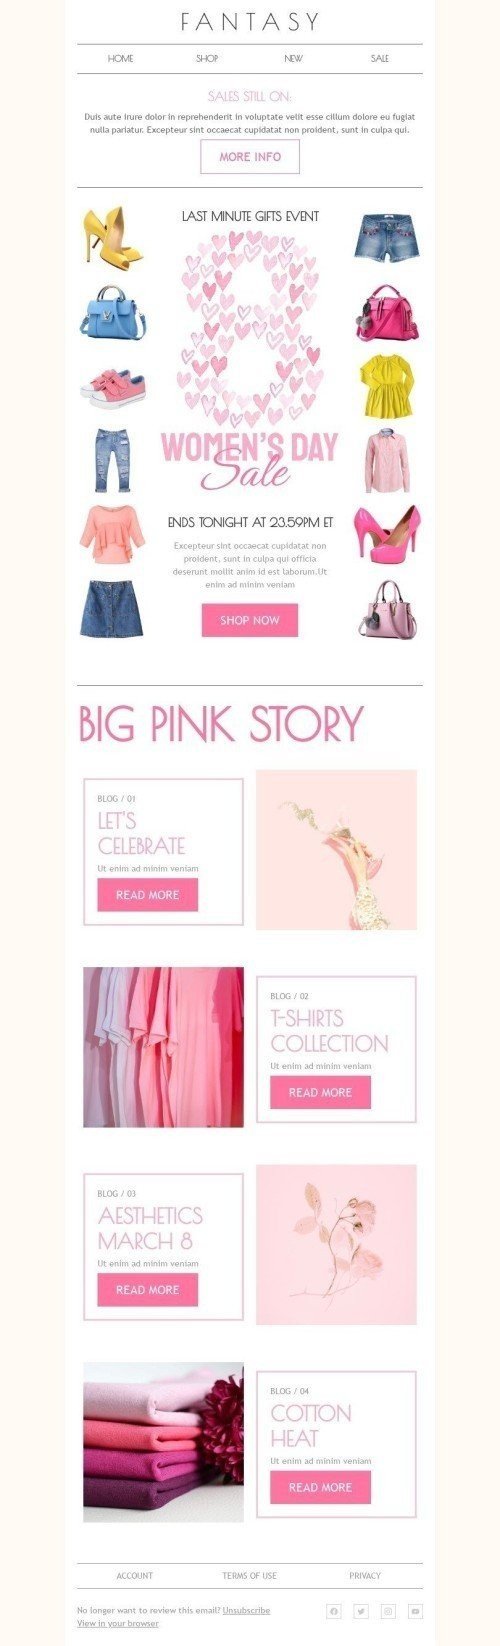 Plantilla de correo electrónico «Gran historia rosa» de Día de la Mujer para la industria de Moda mobile view